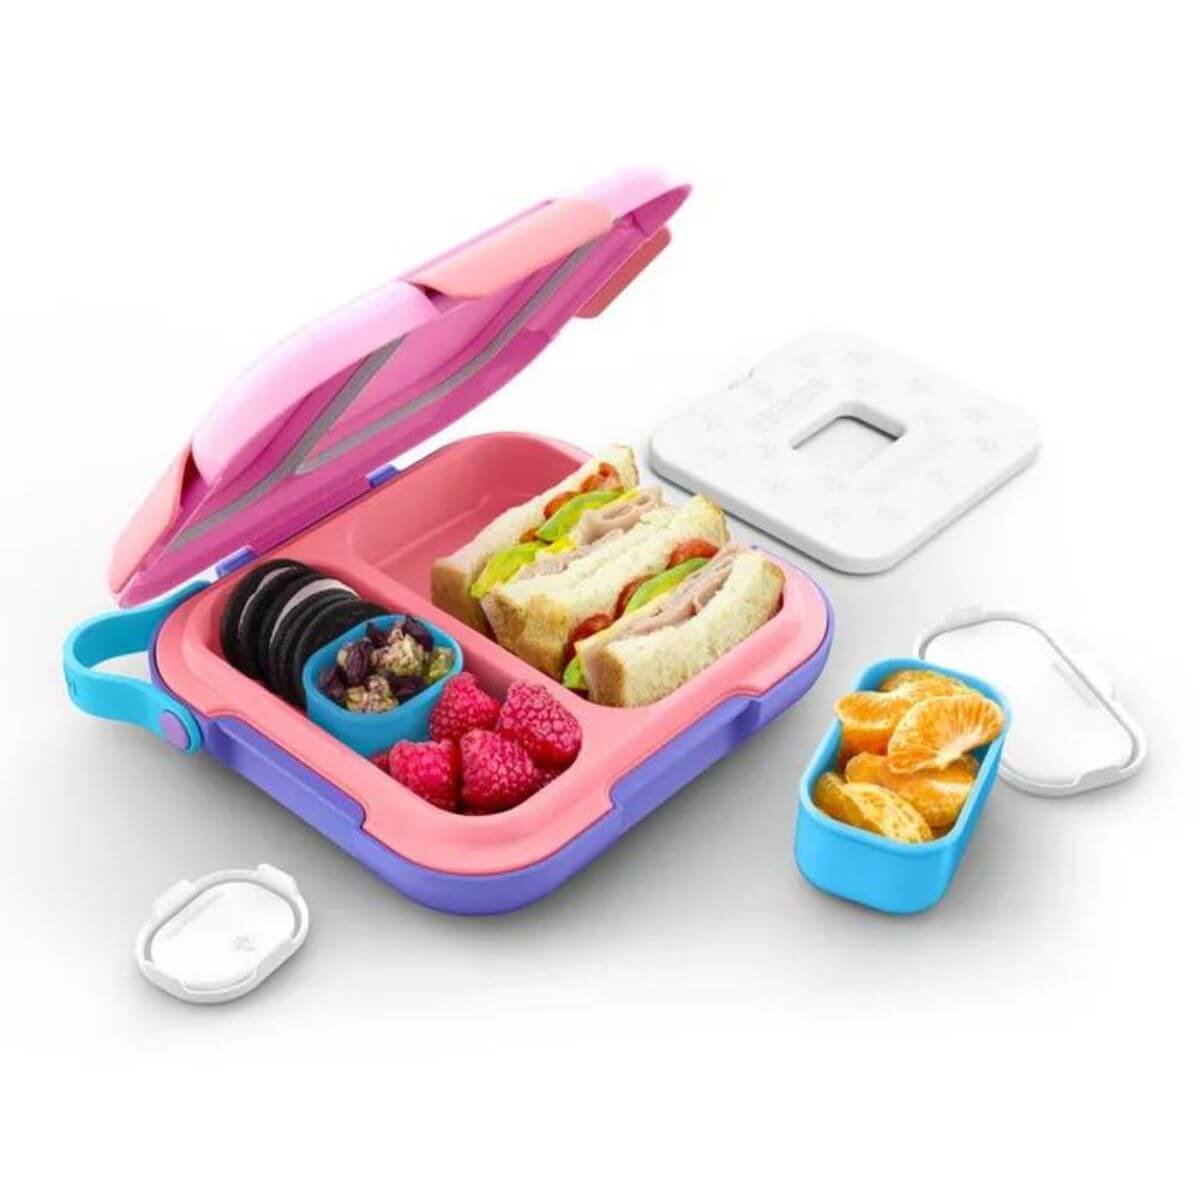 Zoku Neat Bento Lunch Box 5pce Set - Pink